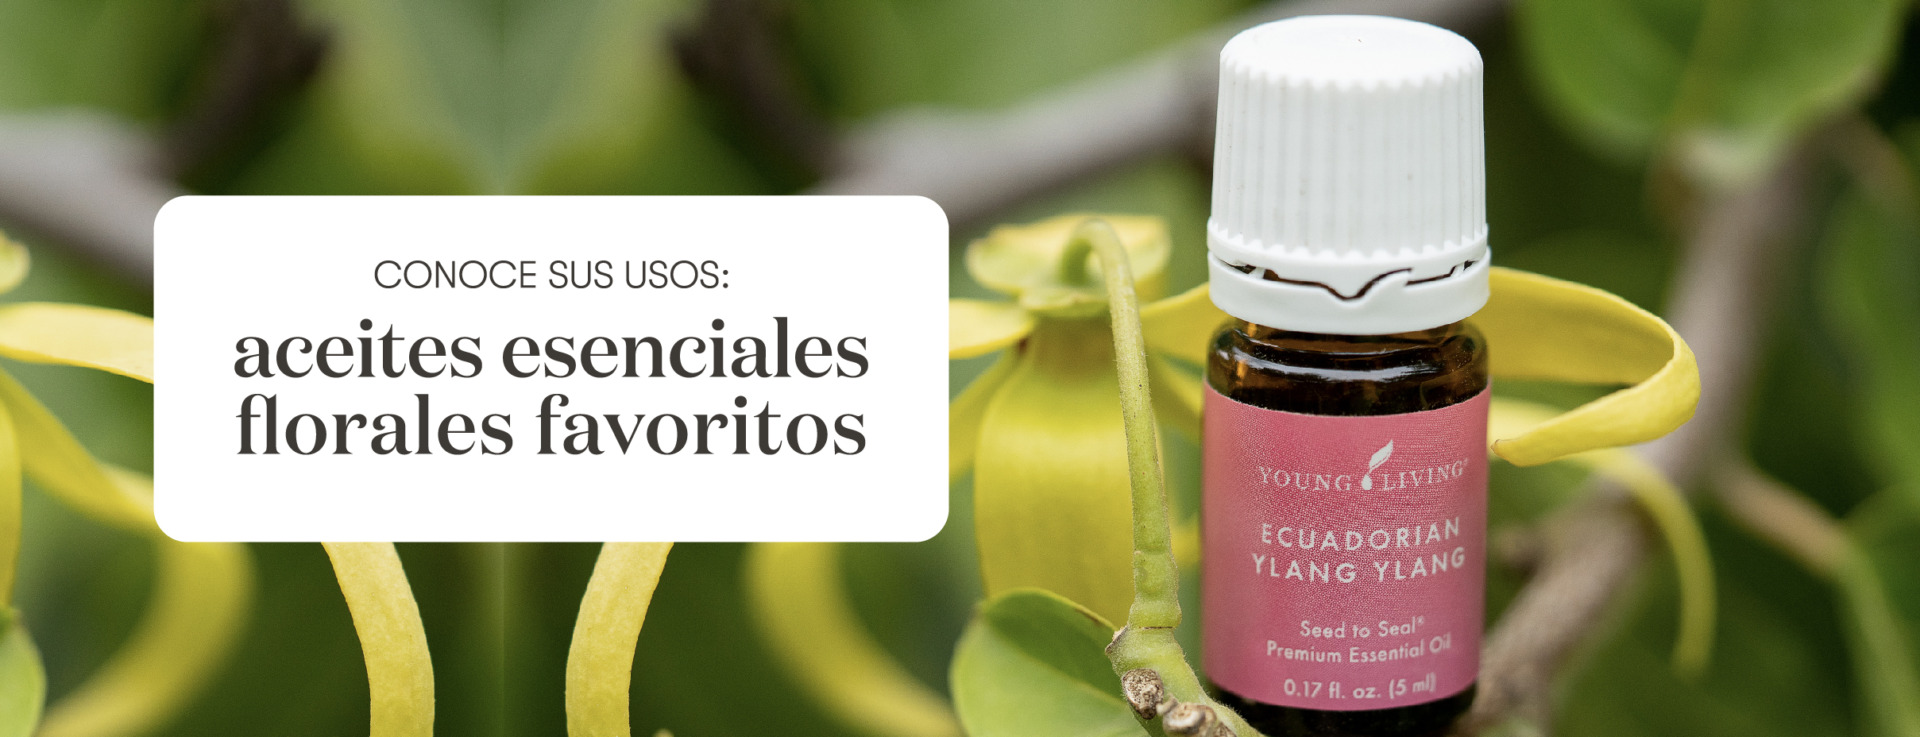 Nuestros Aceites Esenciales florales favoritos ı Young Living Essential Oils